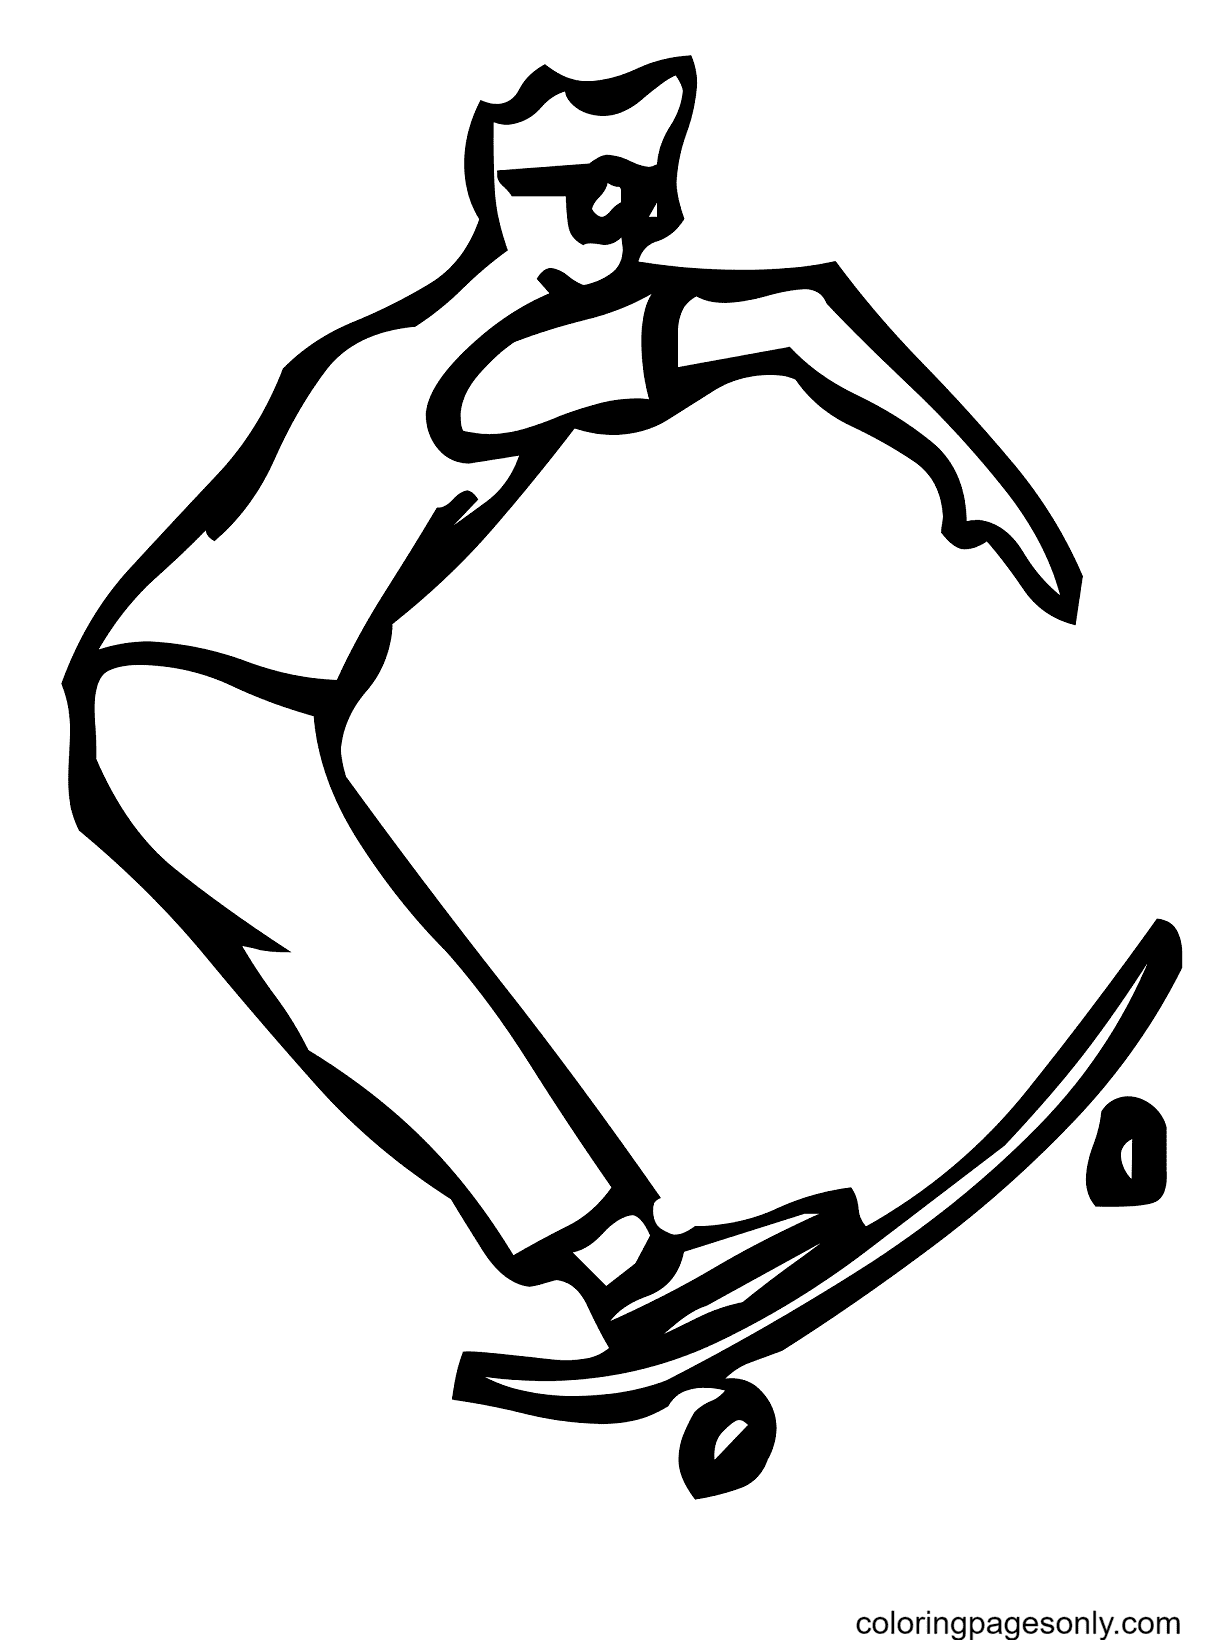 Skateboard Lettera C dalla lettera C